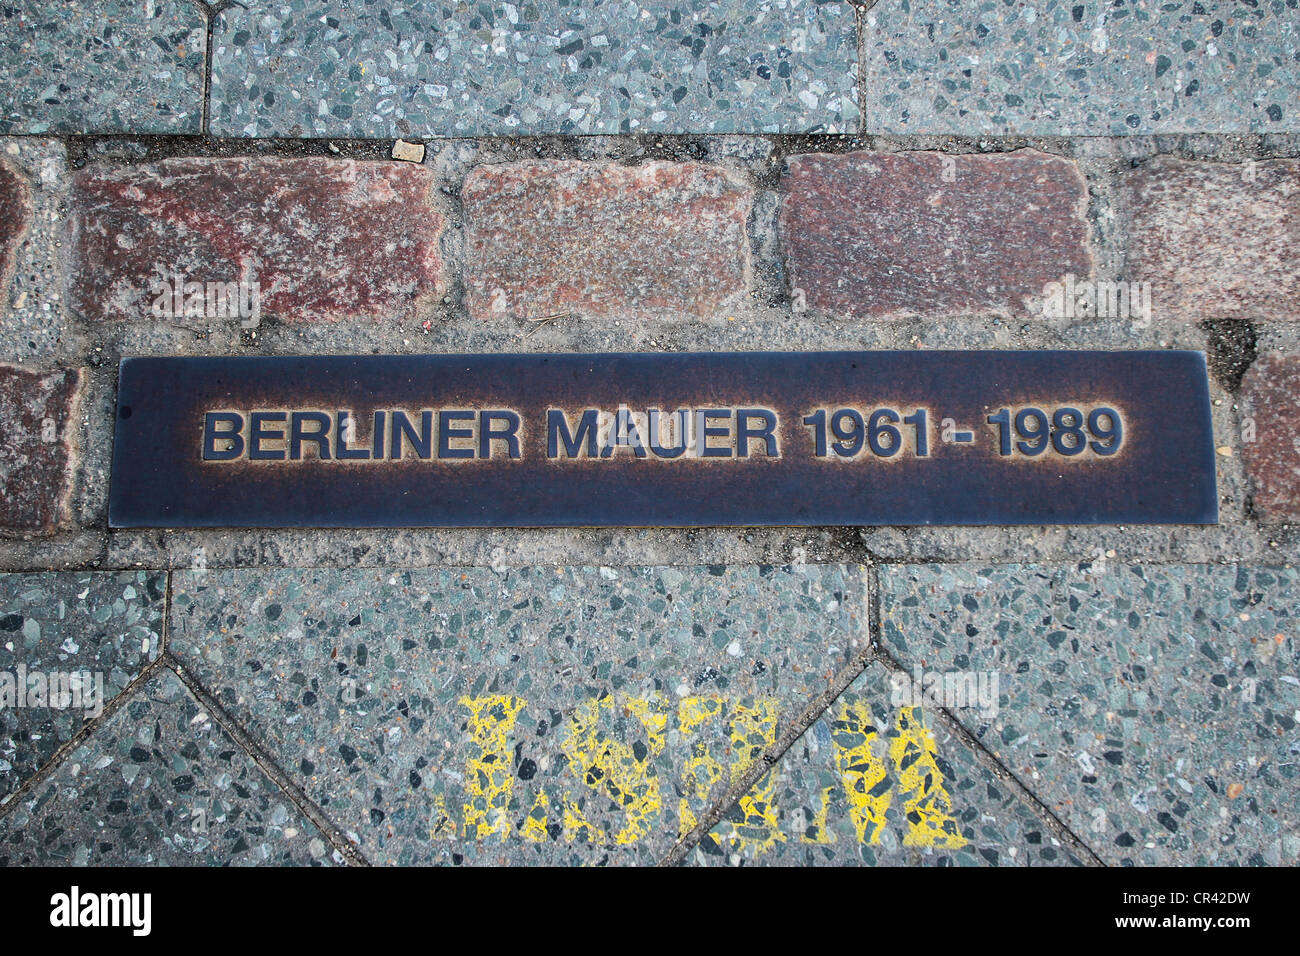 Lapide commemorativa del muro di Berlino, Berliner Mauer 1961-1989, nel terreno lungo la strada, Germania Foto Stock